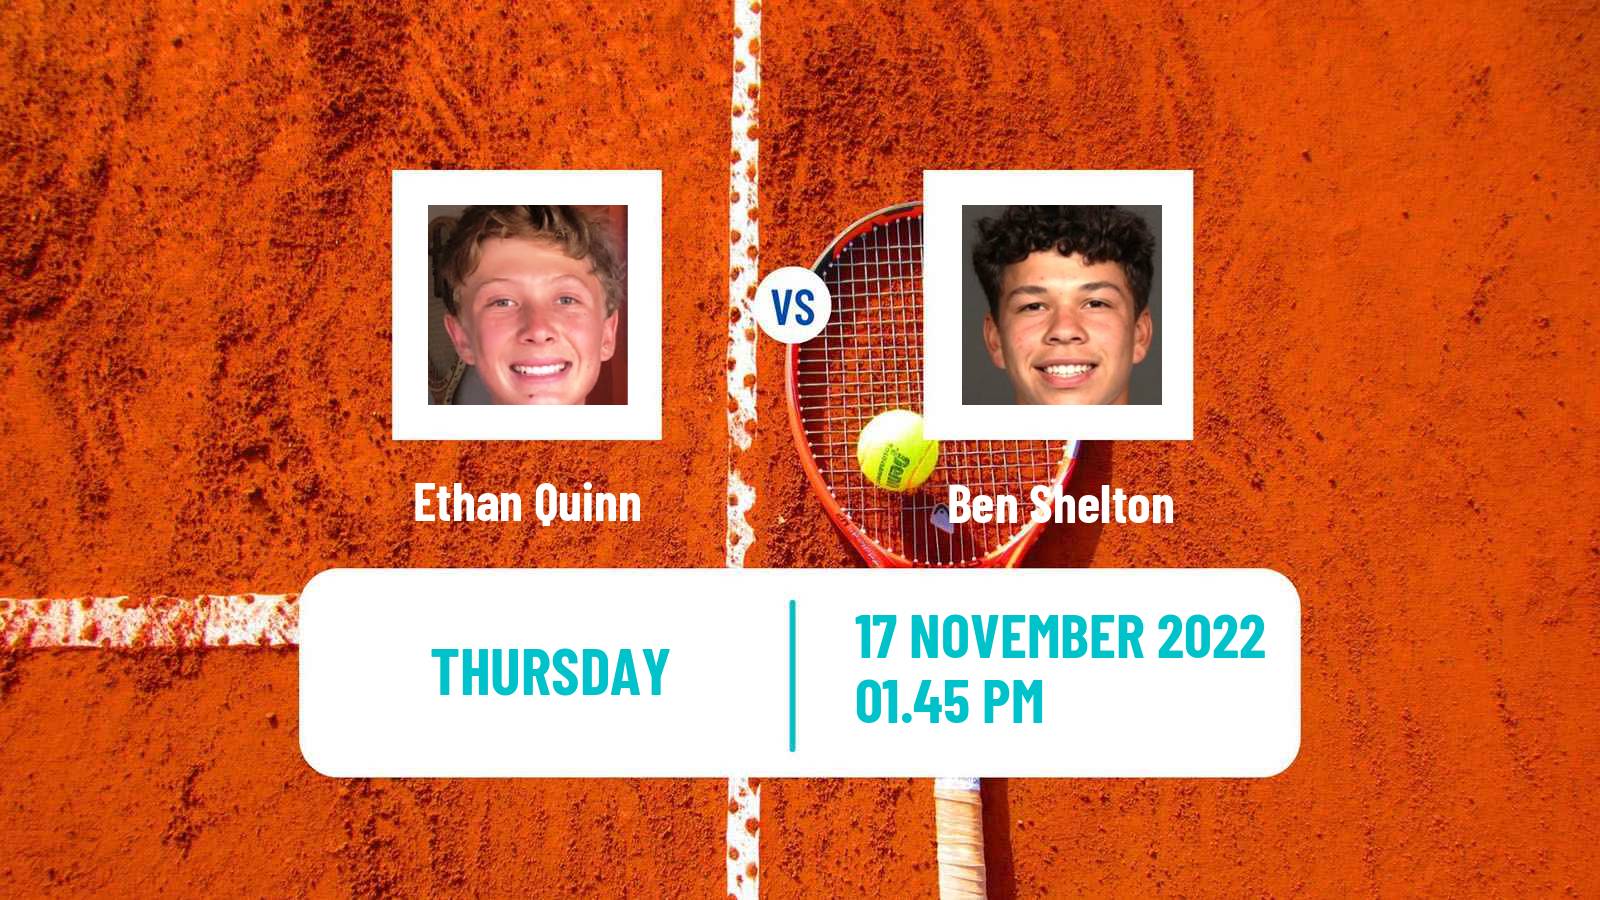 Tennis ATP Challenger Ethan Quinn - Ben Shelton